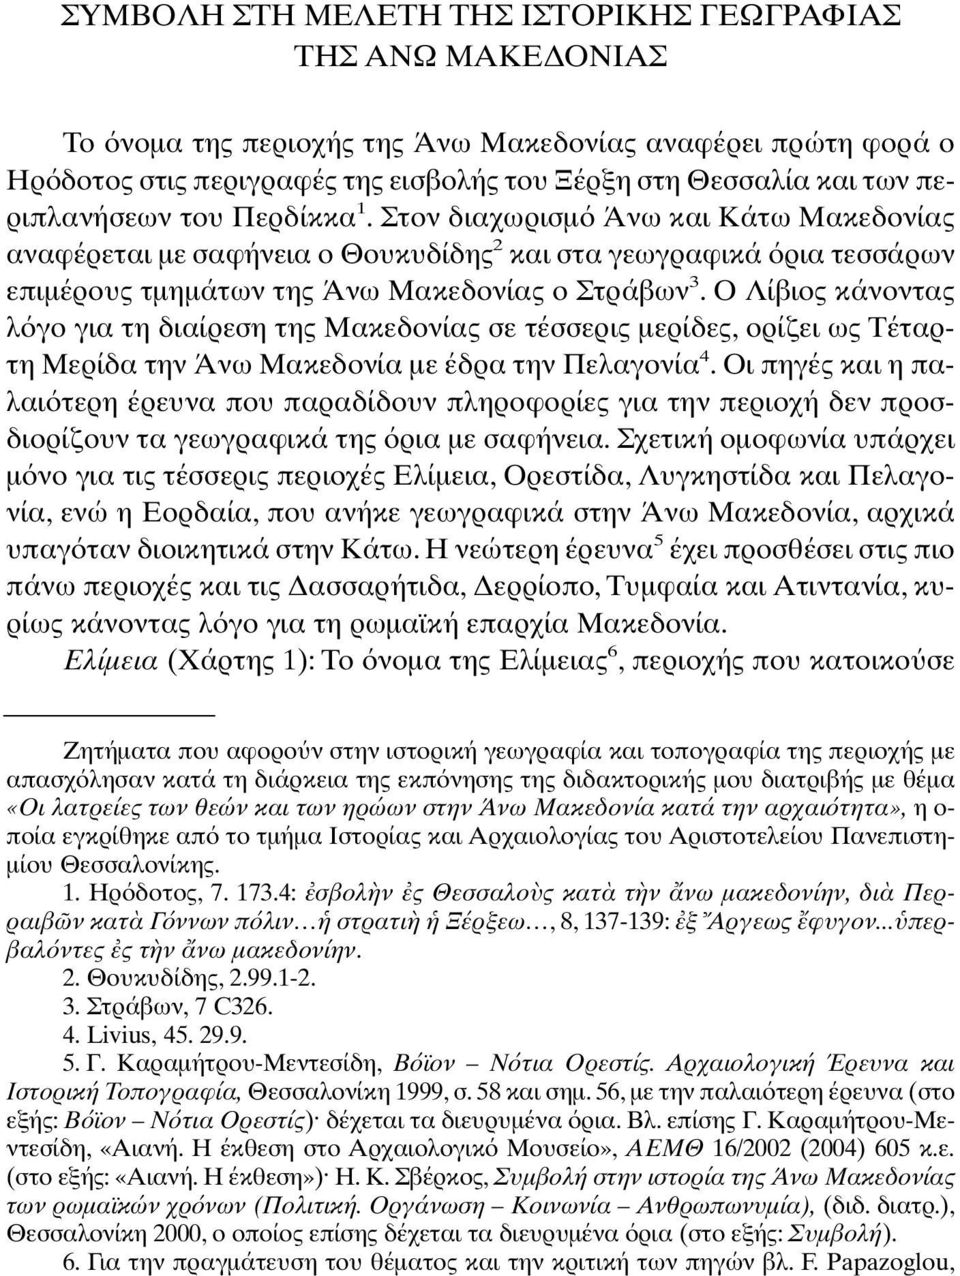 Ο Λίβιος κάνοντας λ γο για τη διαίρεση της Μακεδονίας σε τέσσερις µερίδες, ορίζει ως Τέταρτη Μερίδα την Άνω Μακεδονία µε έδρα την Πελαγονία 4.